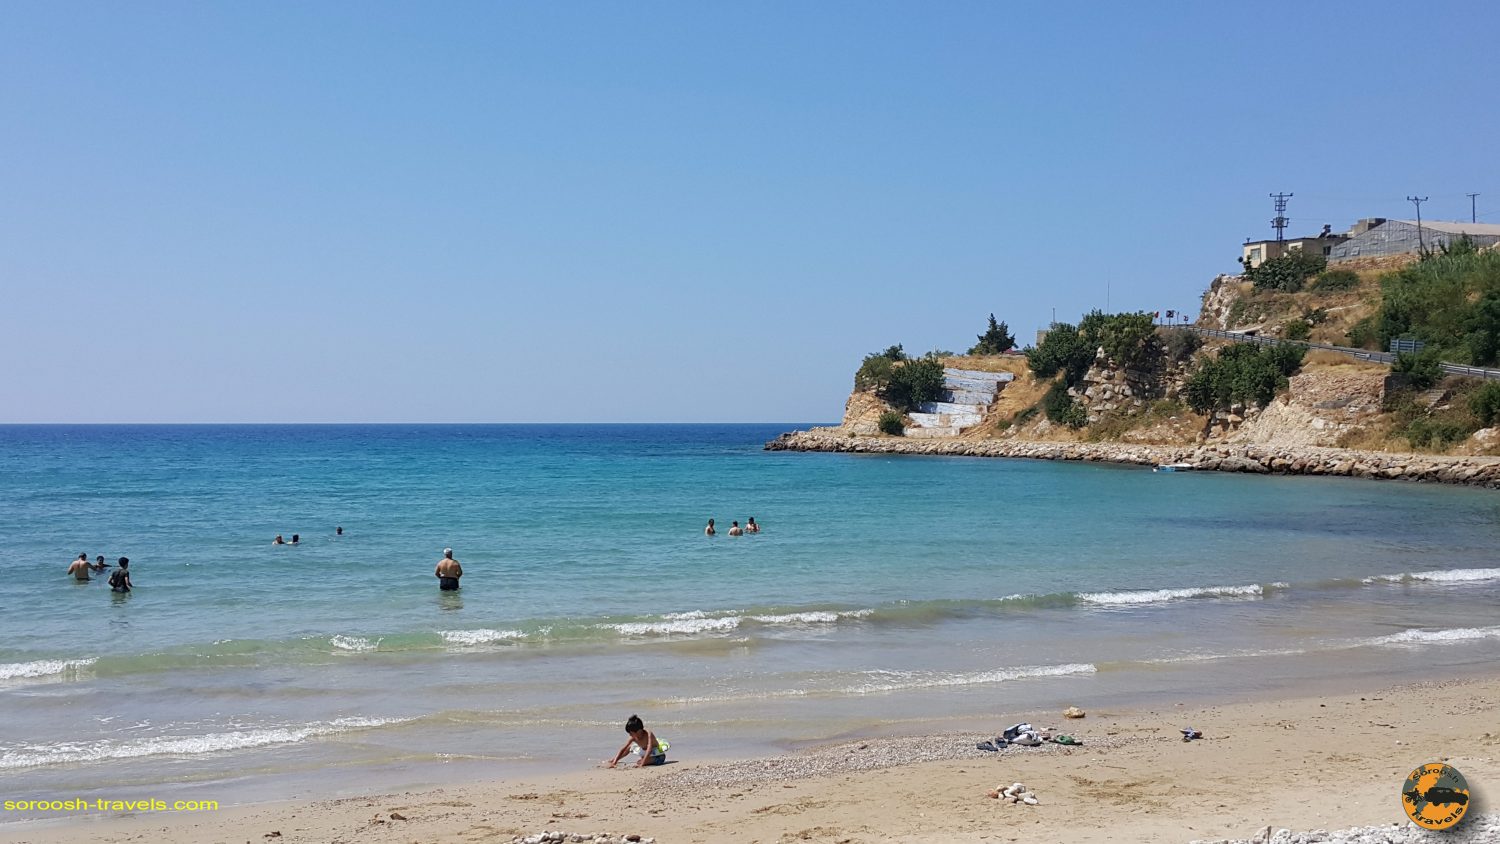 سواحل مدیترانه - جنوب ترکیه - تابستان 1398 2019